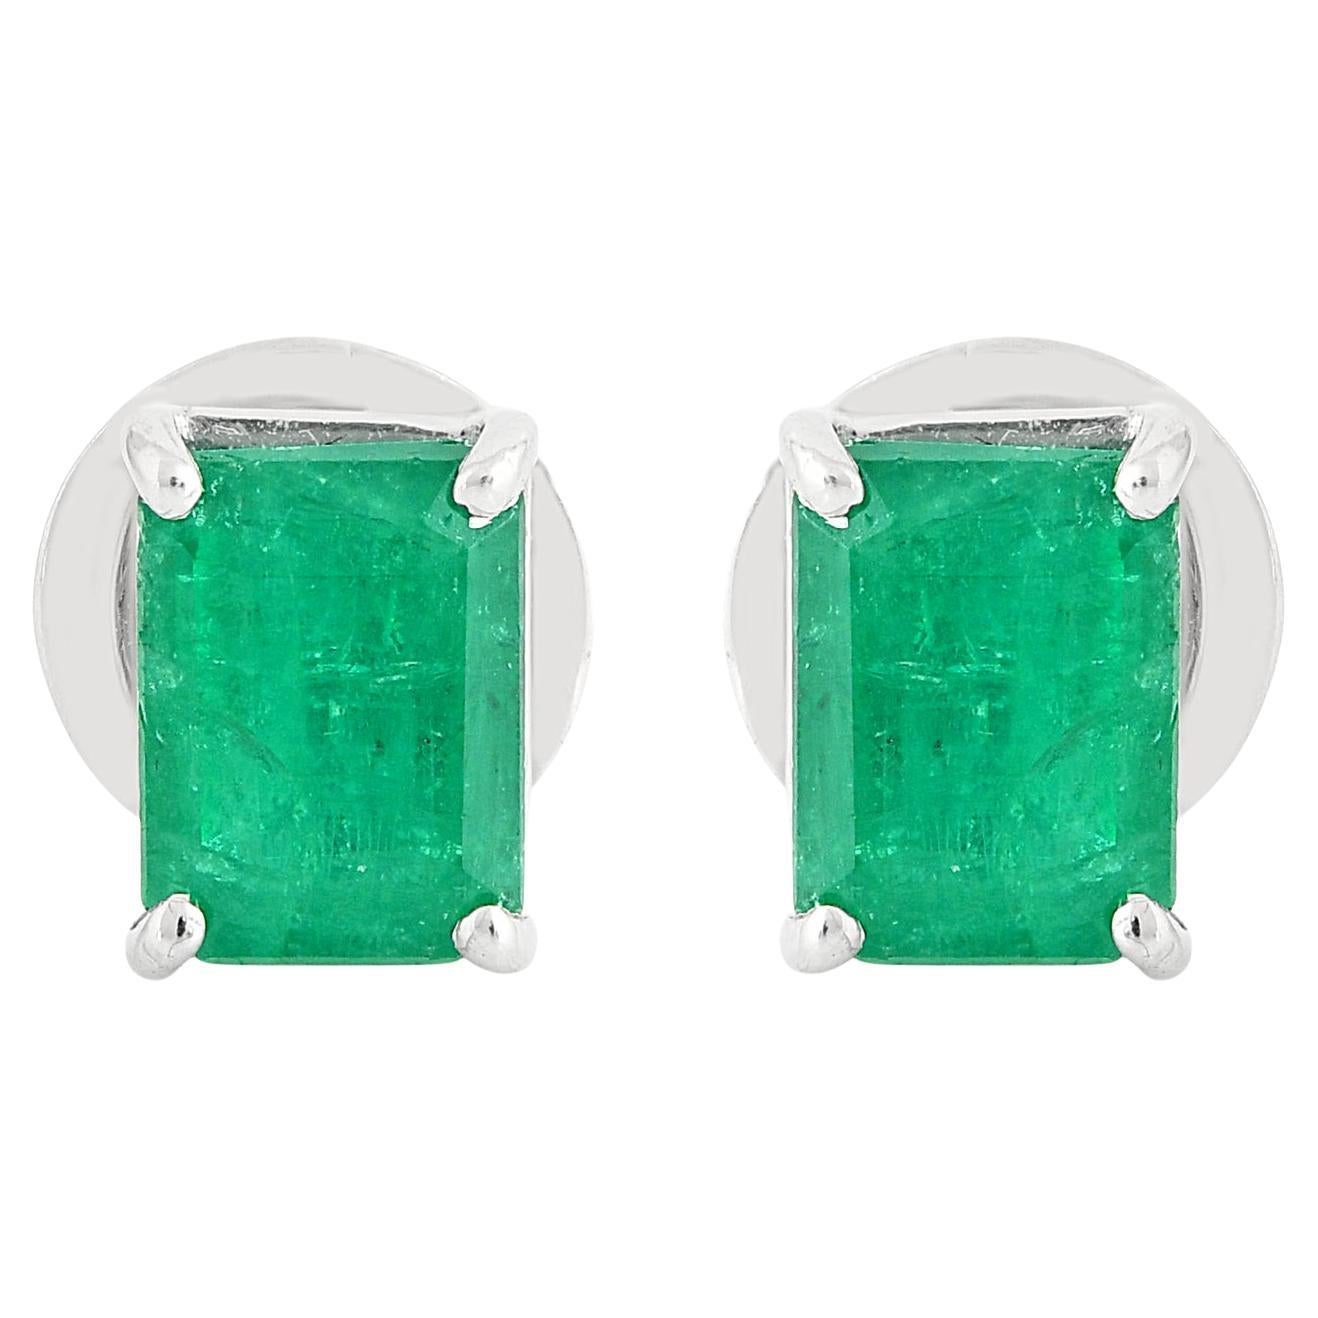 1.95 Carat Zambian Emerald Gemstone Stud Earrings Solid 18k White Gold Jewelry